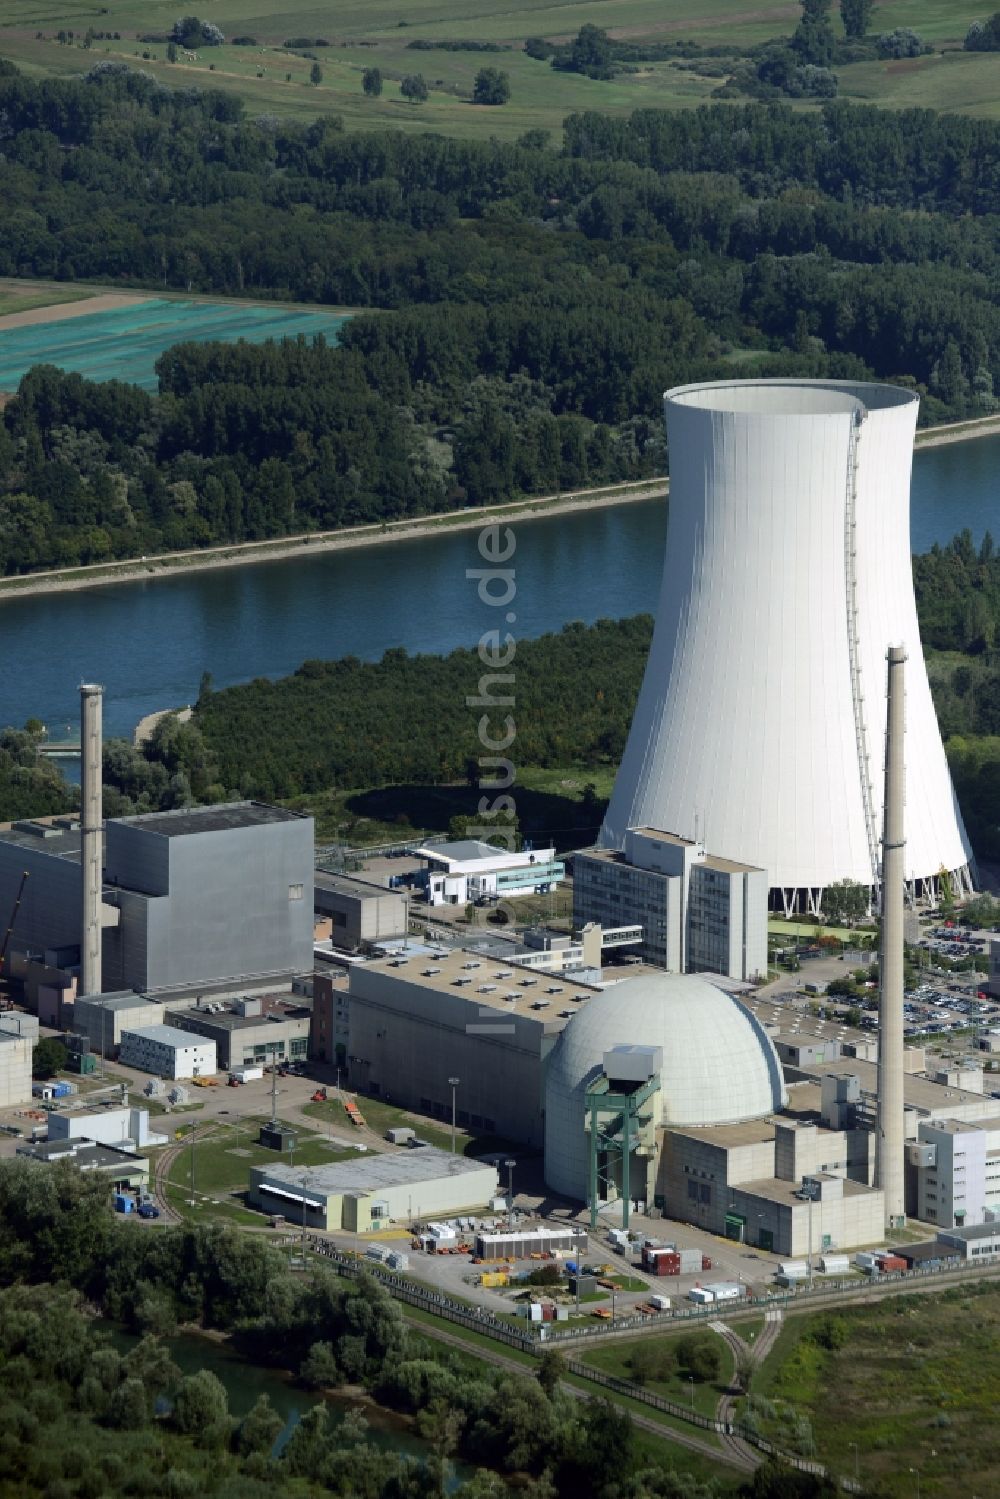 Philippsburg aus der Vogelperspektive: Reaktorblöcke und Anlagen des AKW - KKW Kernkraftwerk in Philippsburg im Bundesland Baden-Württemberg